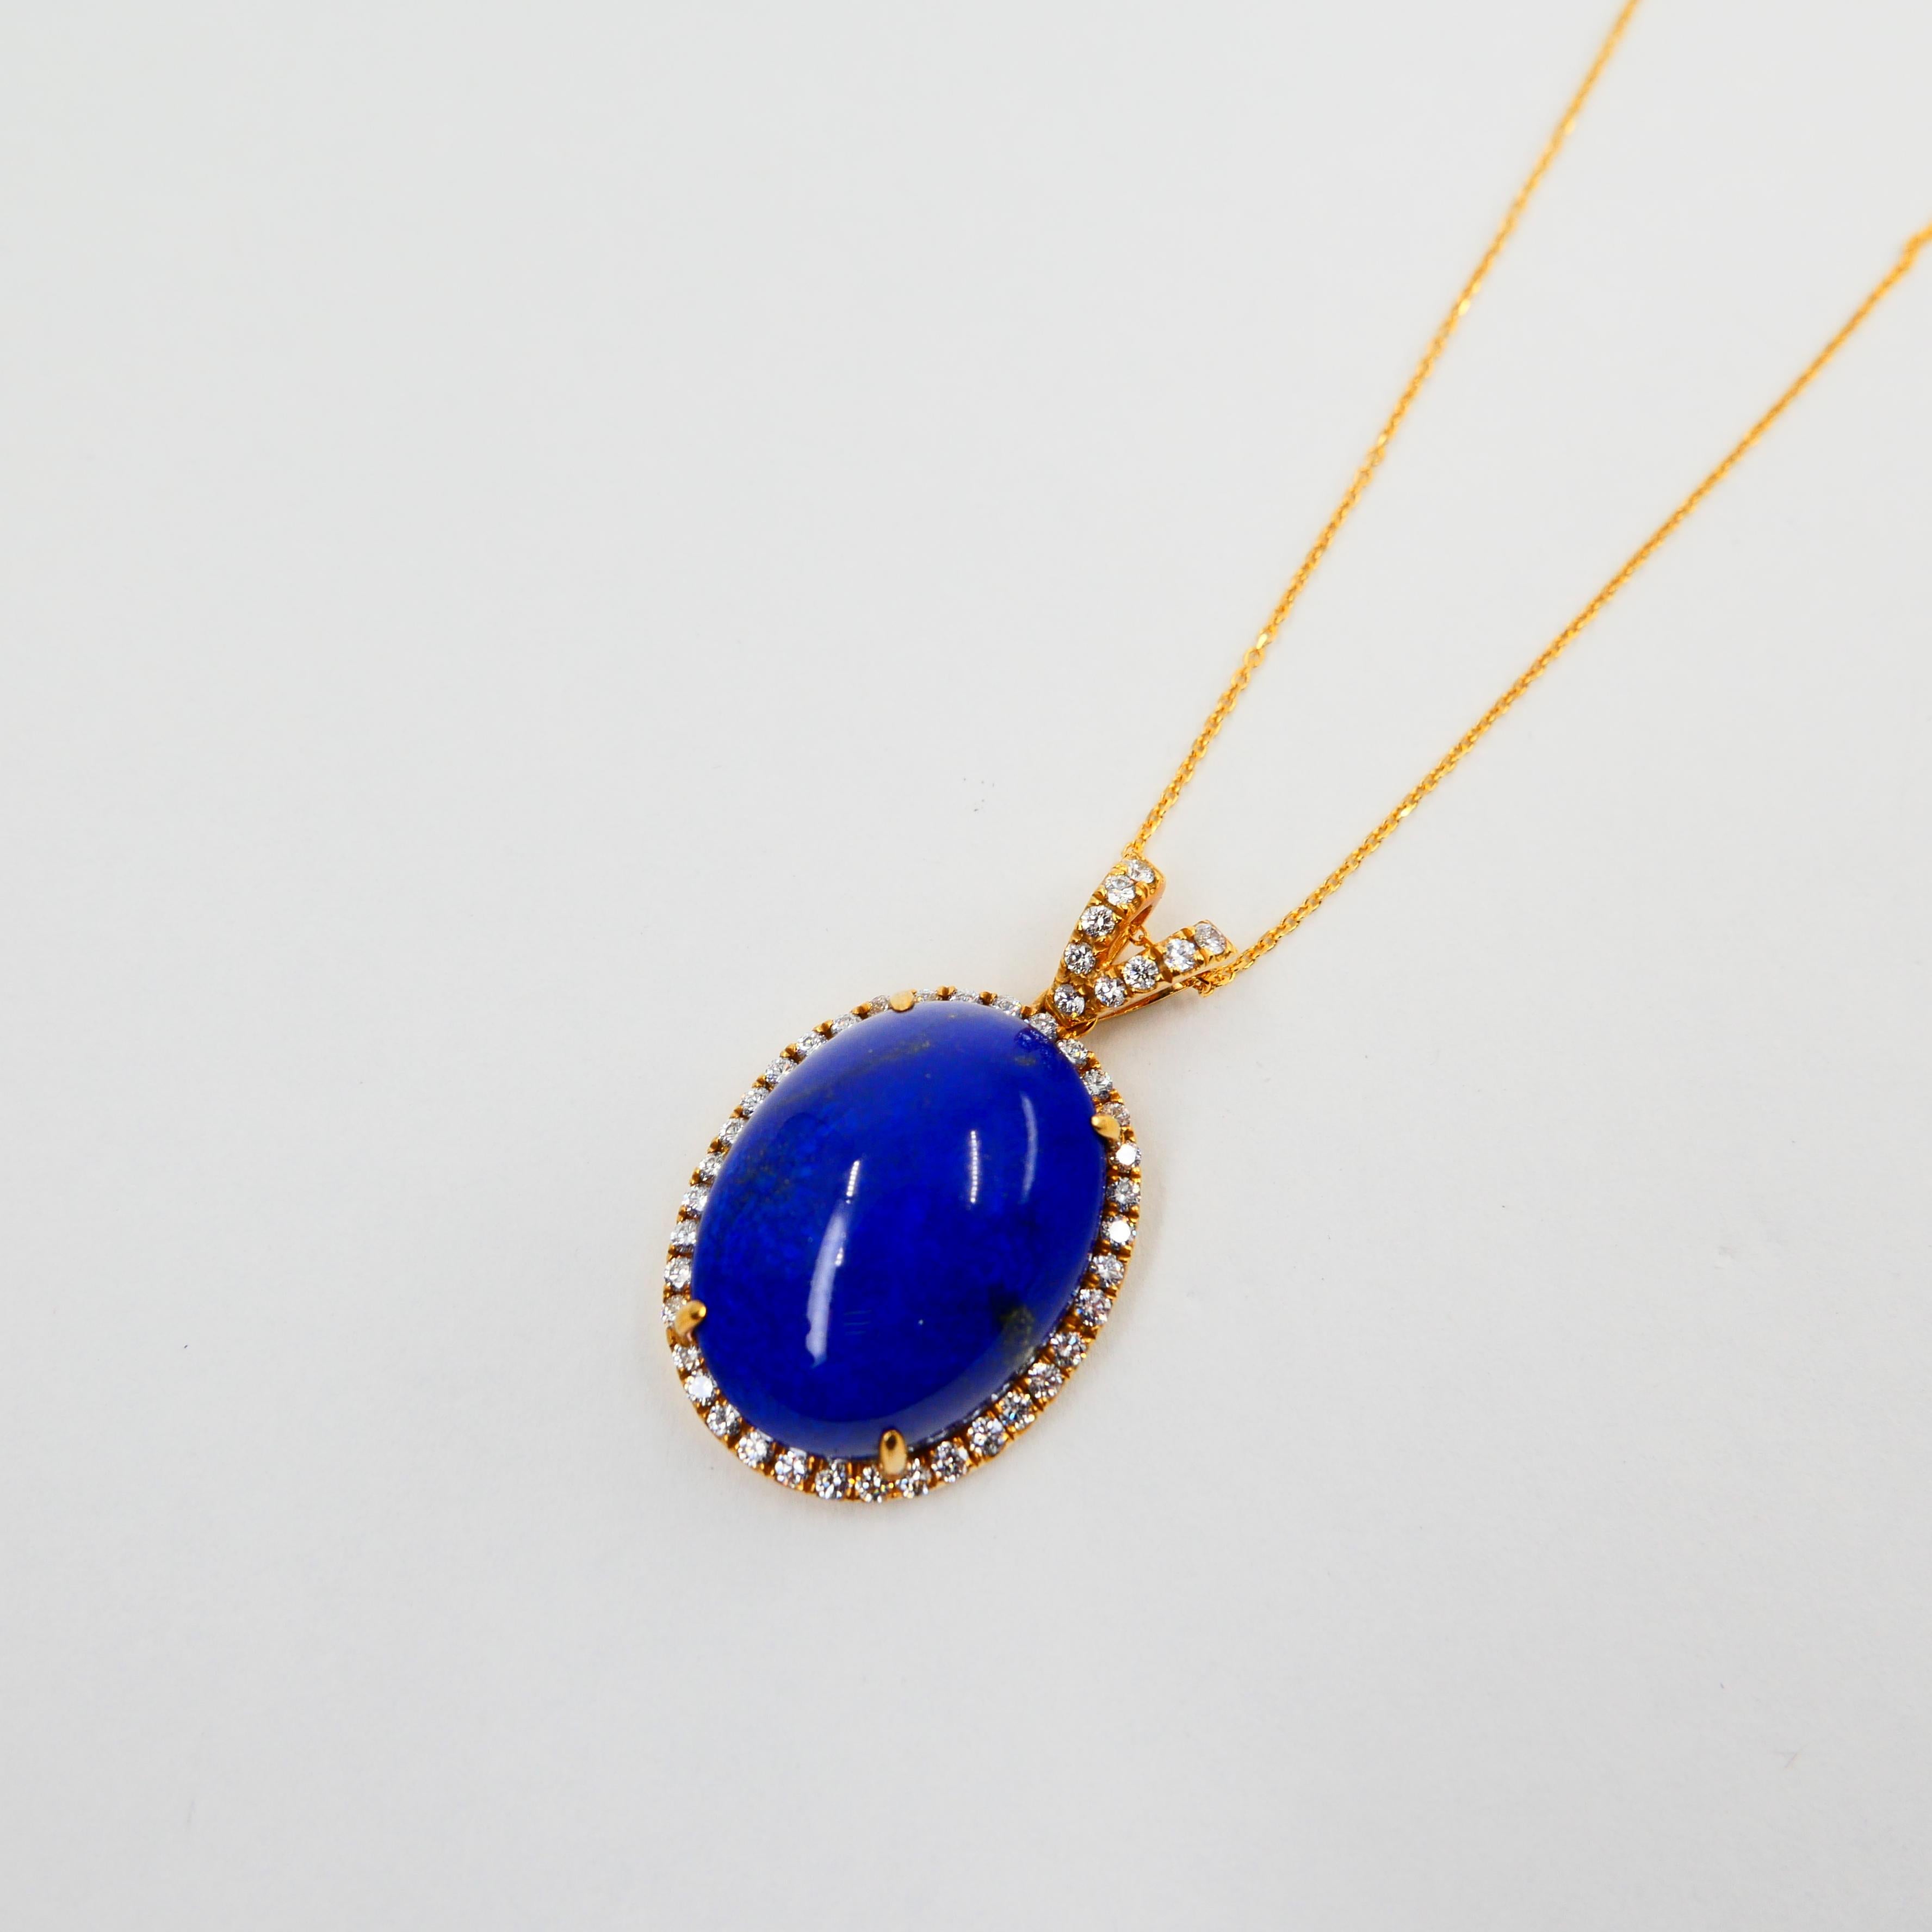 Oval Cut Royal Blue Lapis Lazuli & Diamond Pendant Drop Necklace, Gold Veins & Gold Spots For Sale